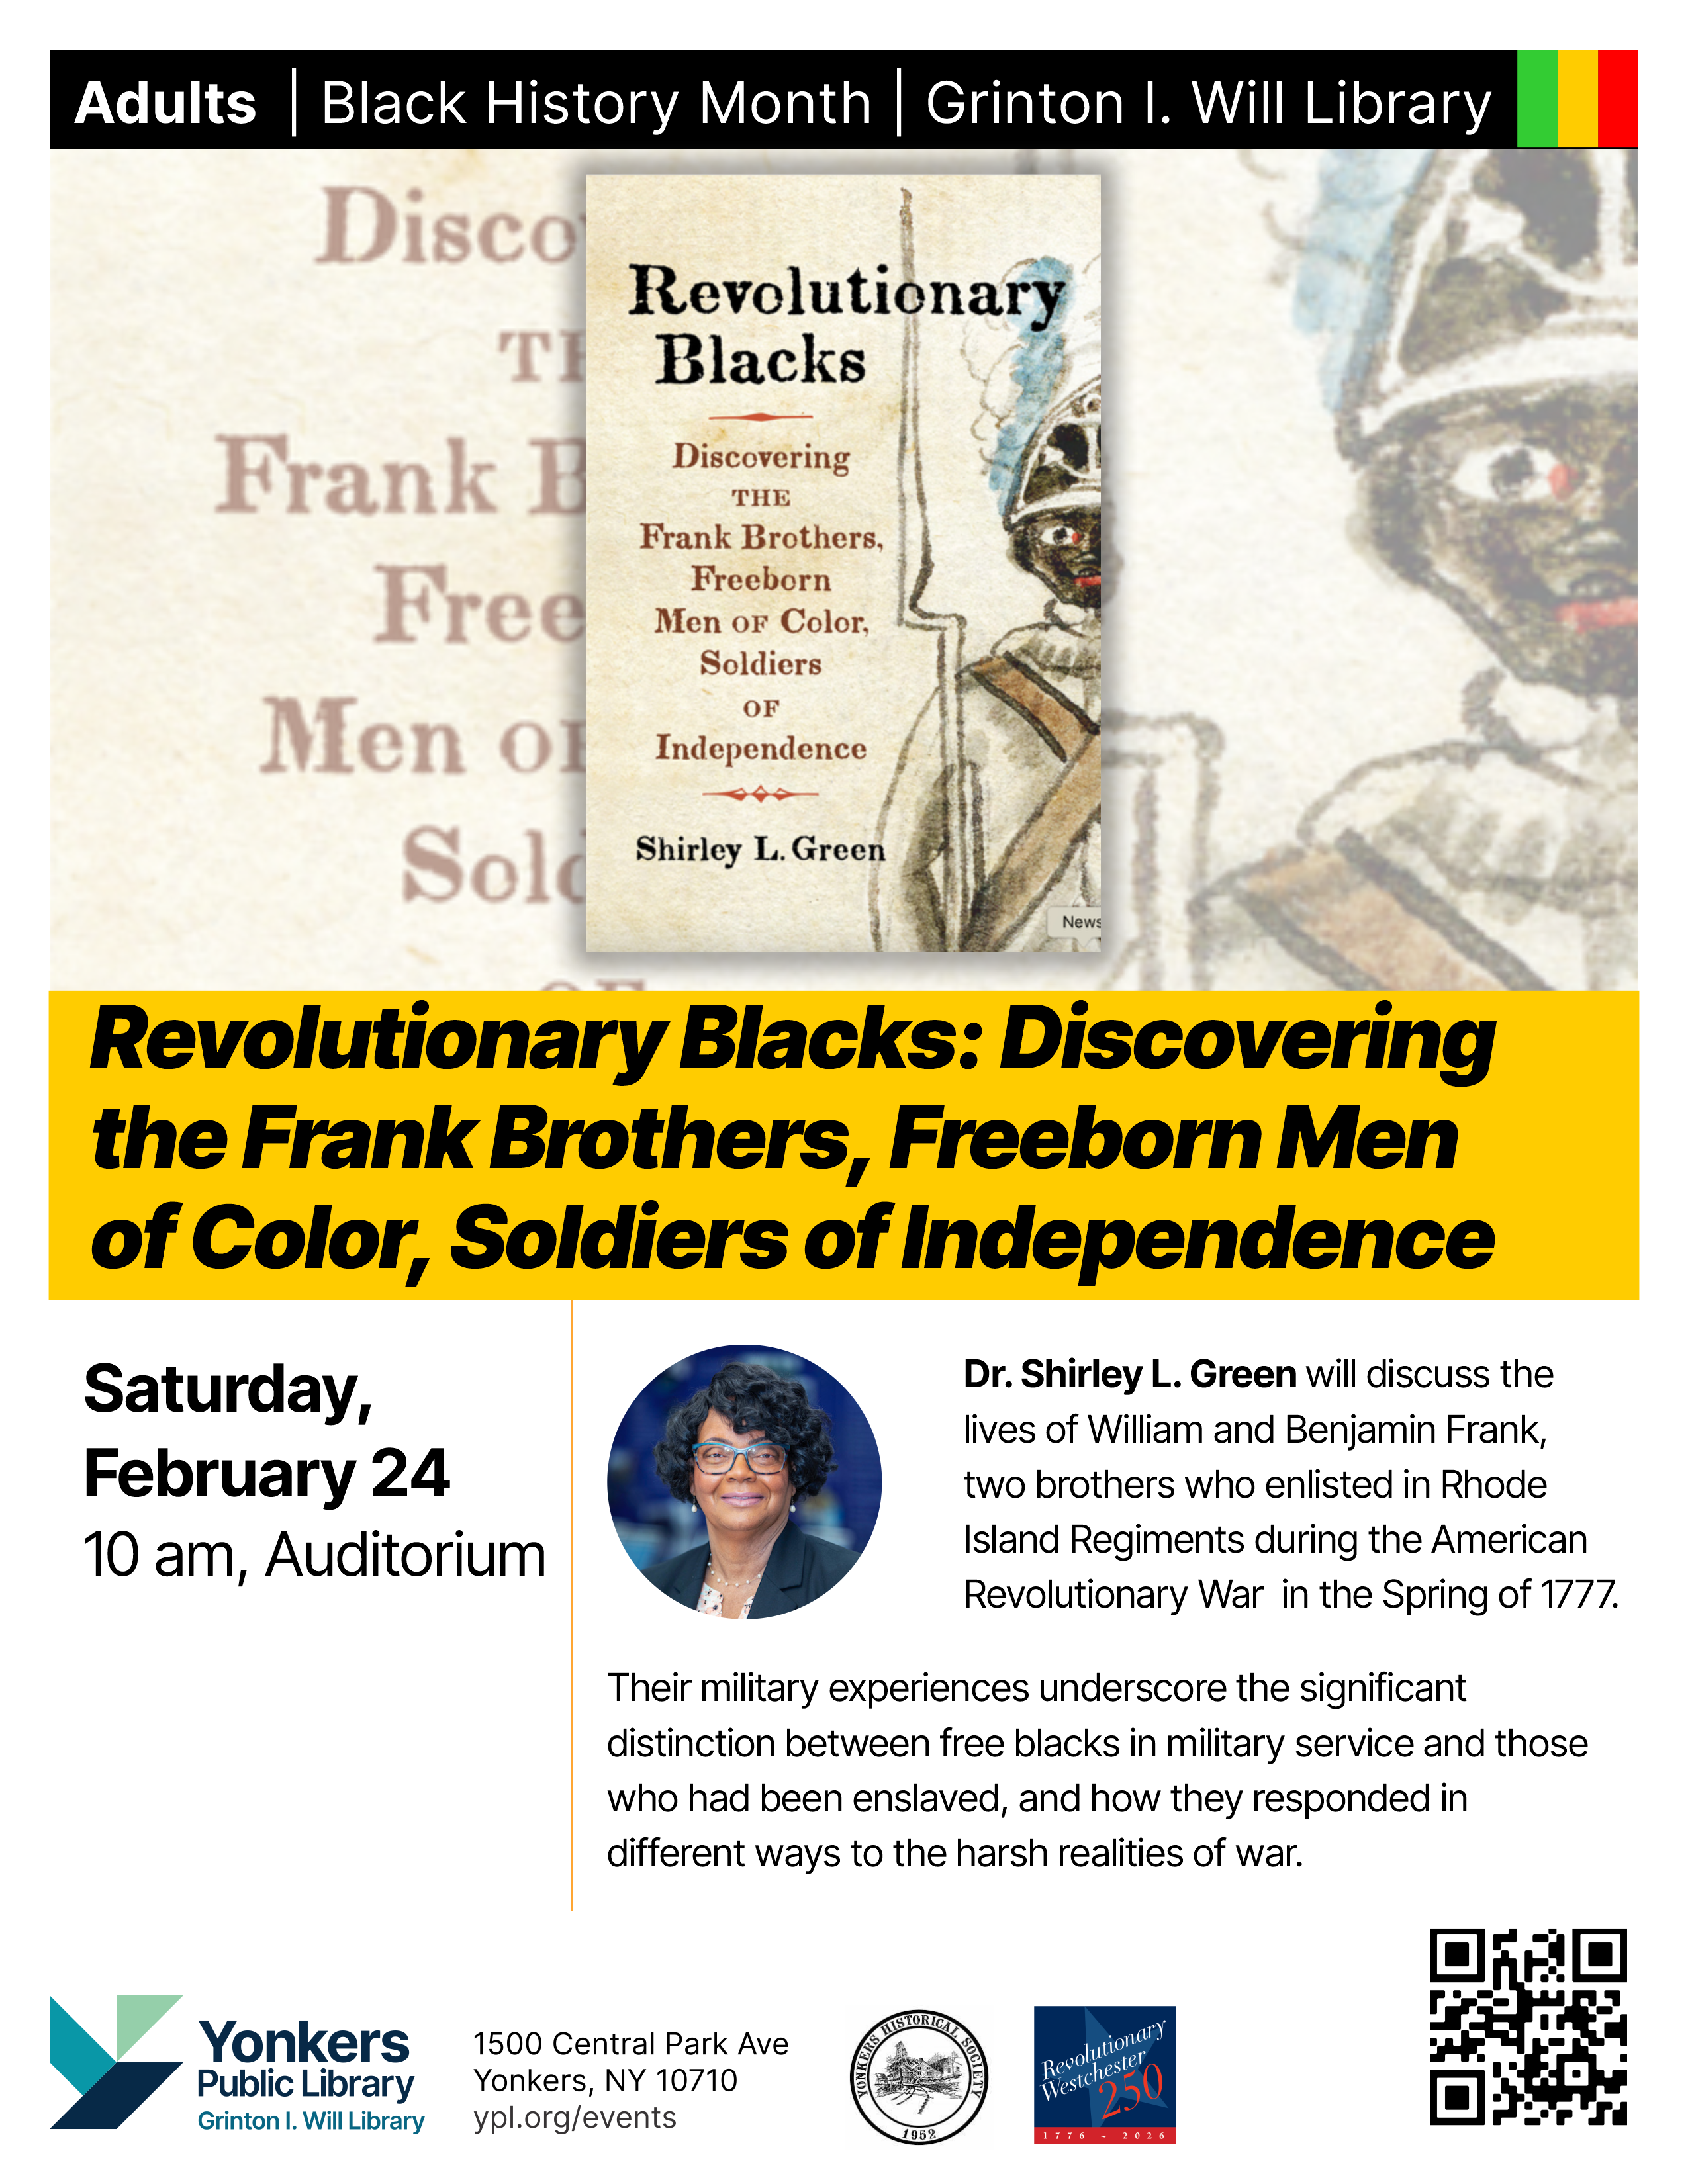 Flier for Revolutionary Blacks program